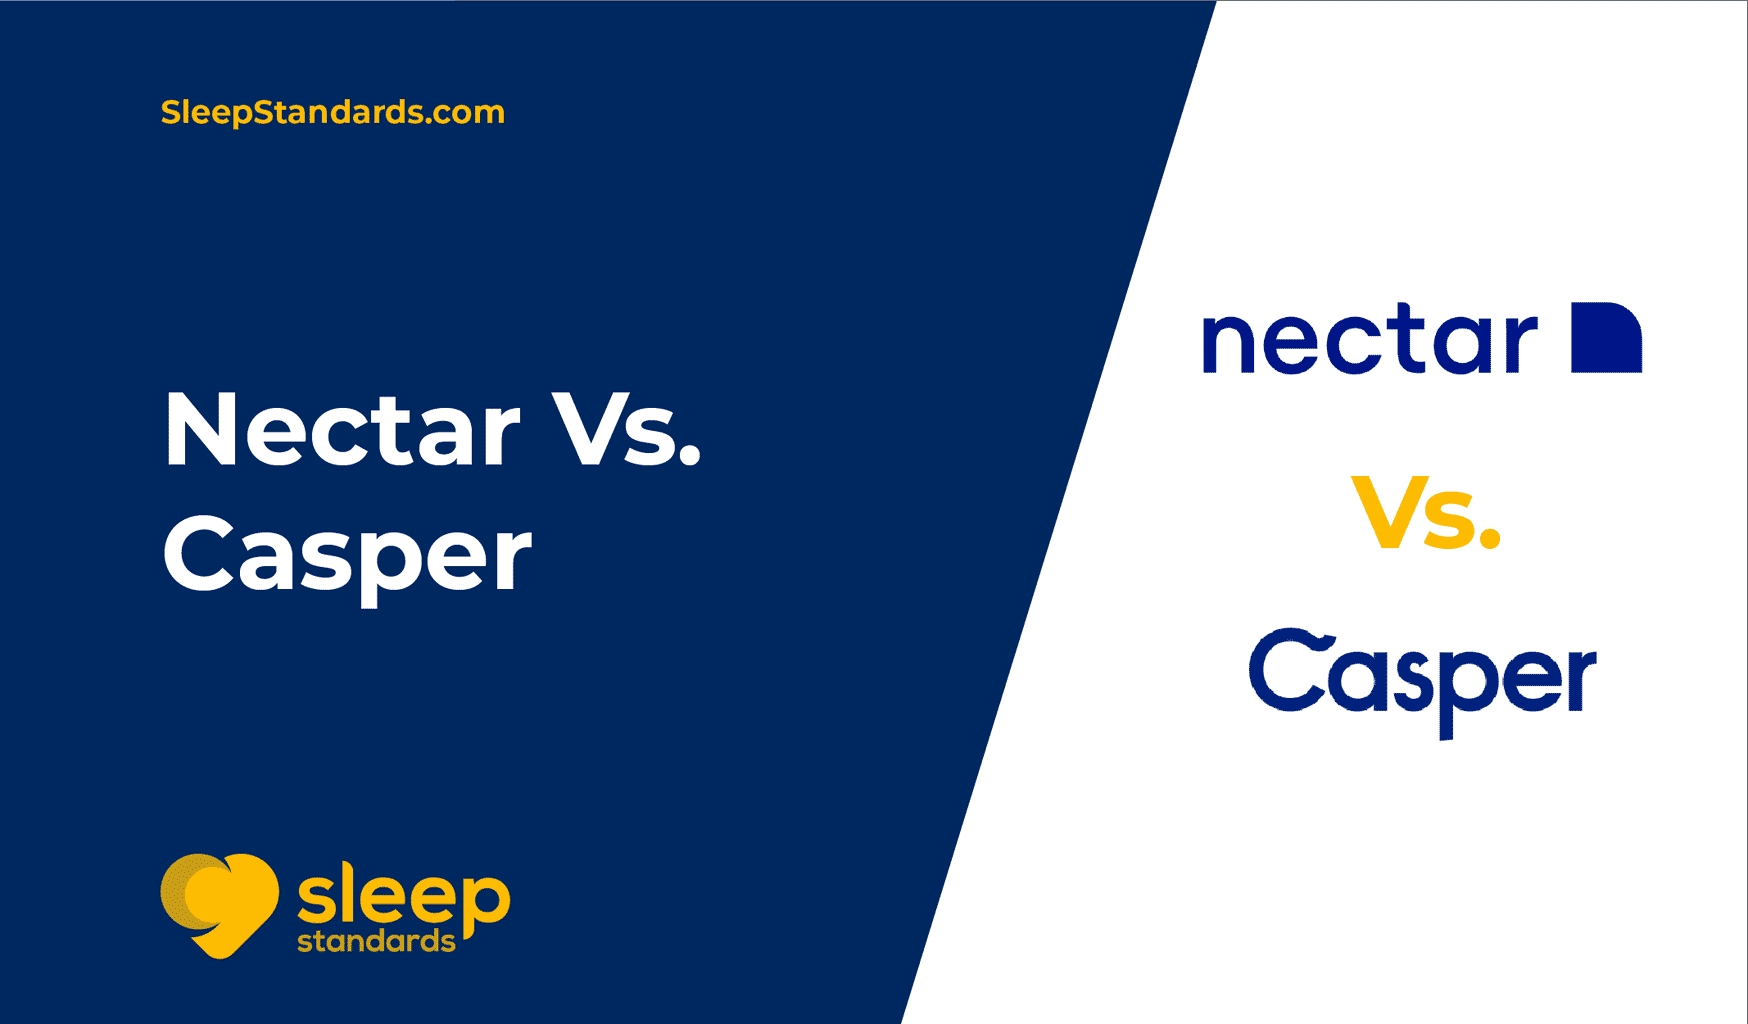 Nectar vs casper